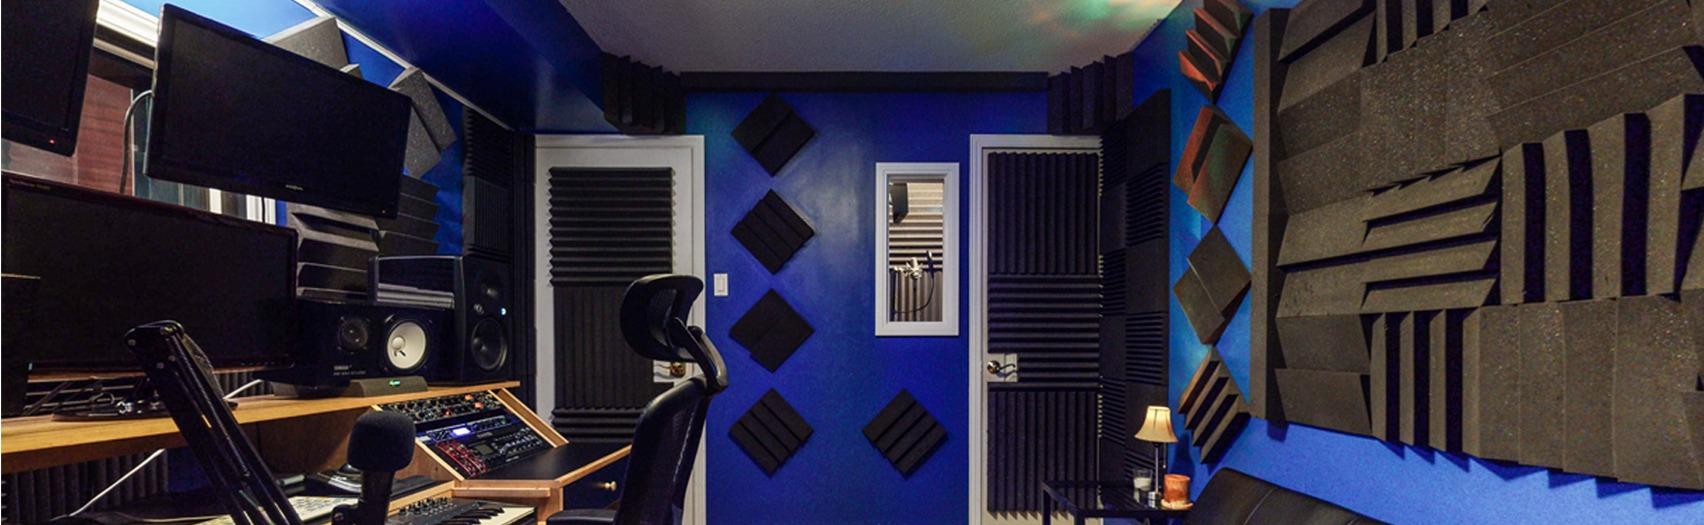 RNRBNB Blue Recording Room